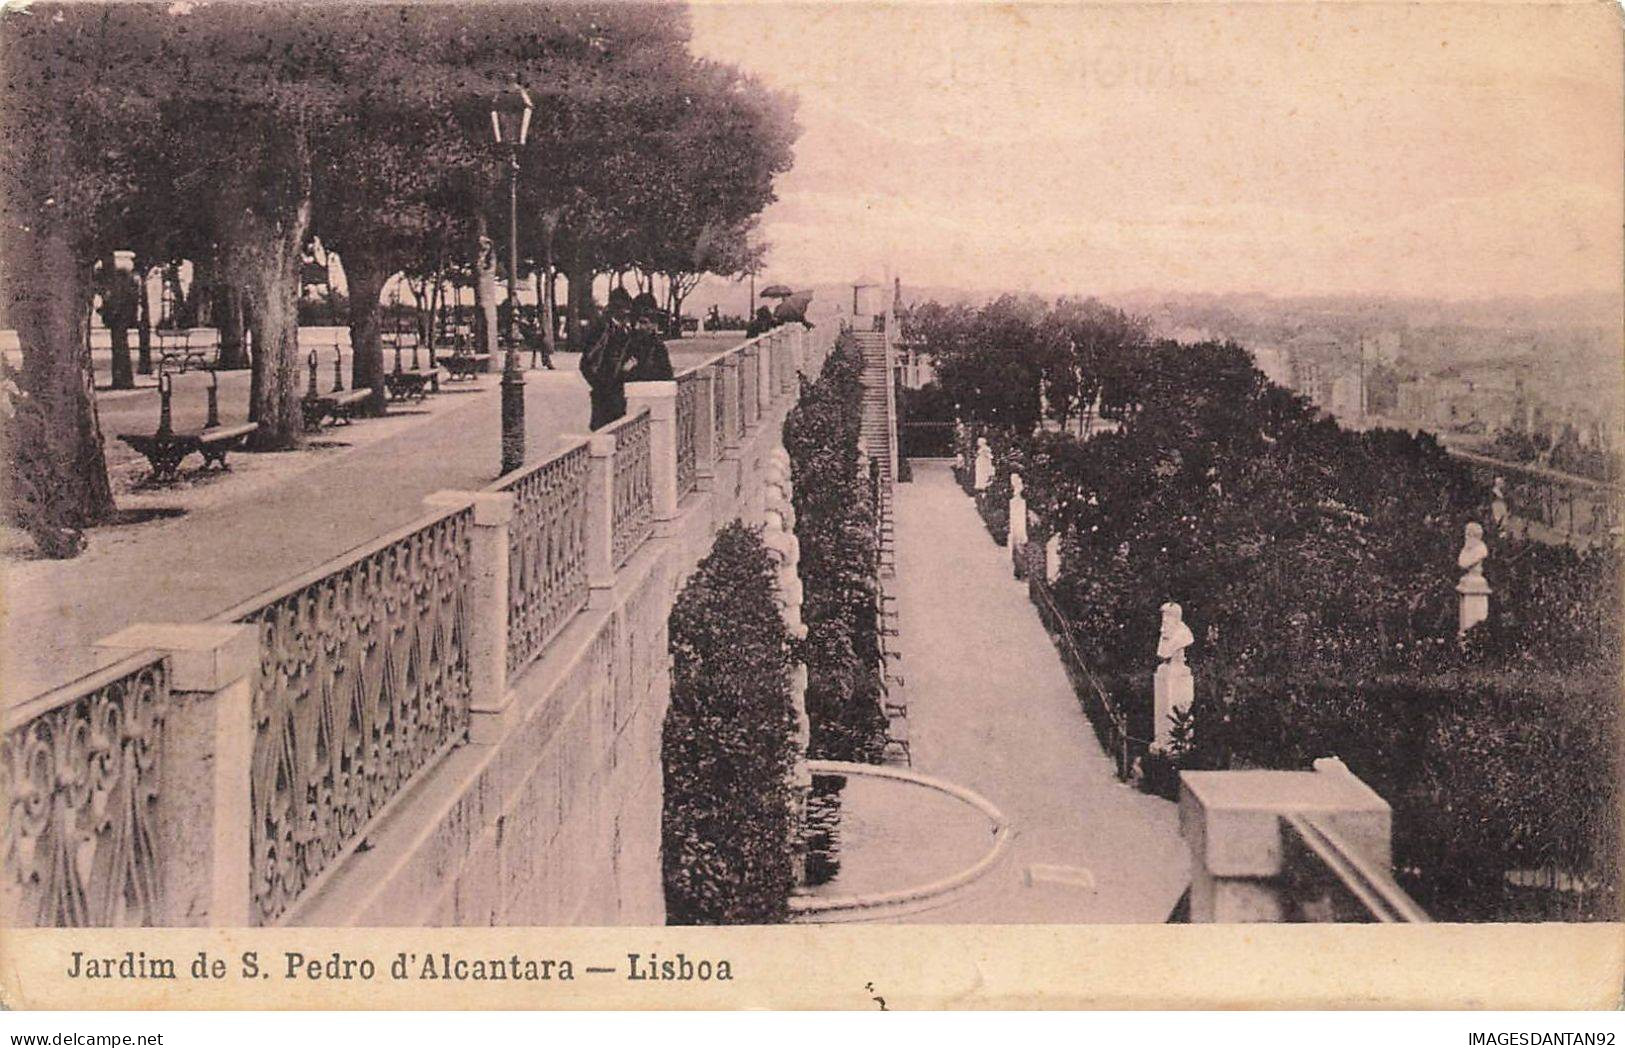 BATEAU #FG53196 PAQUEBOT RMSP ARAGUAYA A PARIS CACHET POSTED HIGH SEA 1910 - Piroscafi